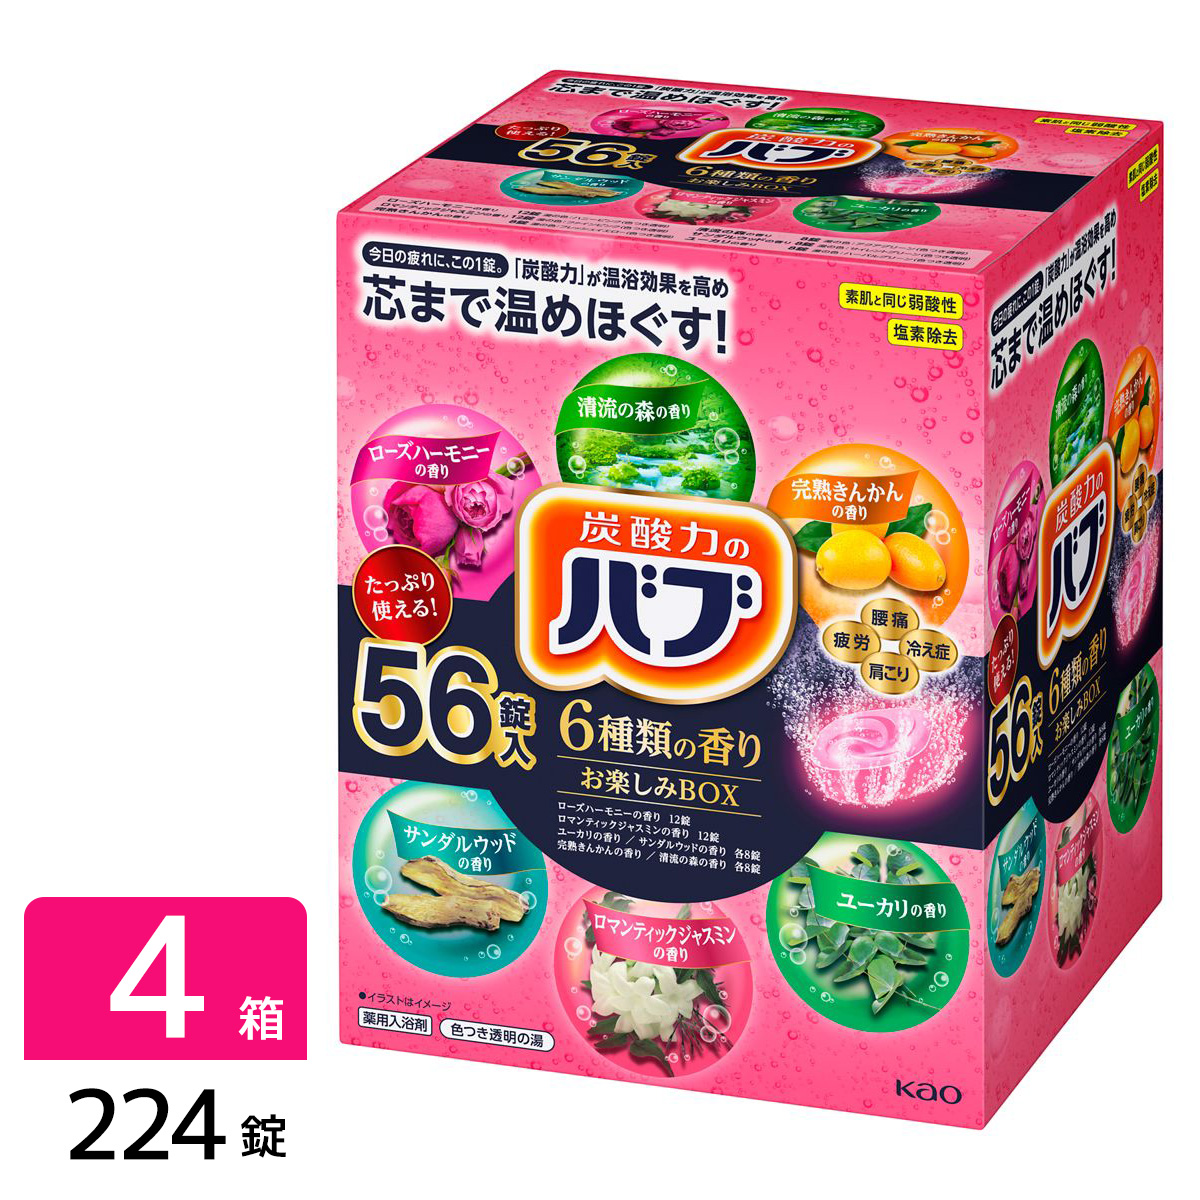 バブ 6種類の香り お楽しみBOX 224錠(56錠×4箱)